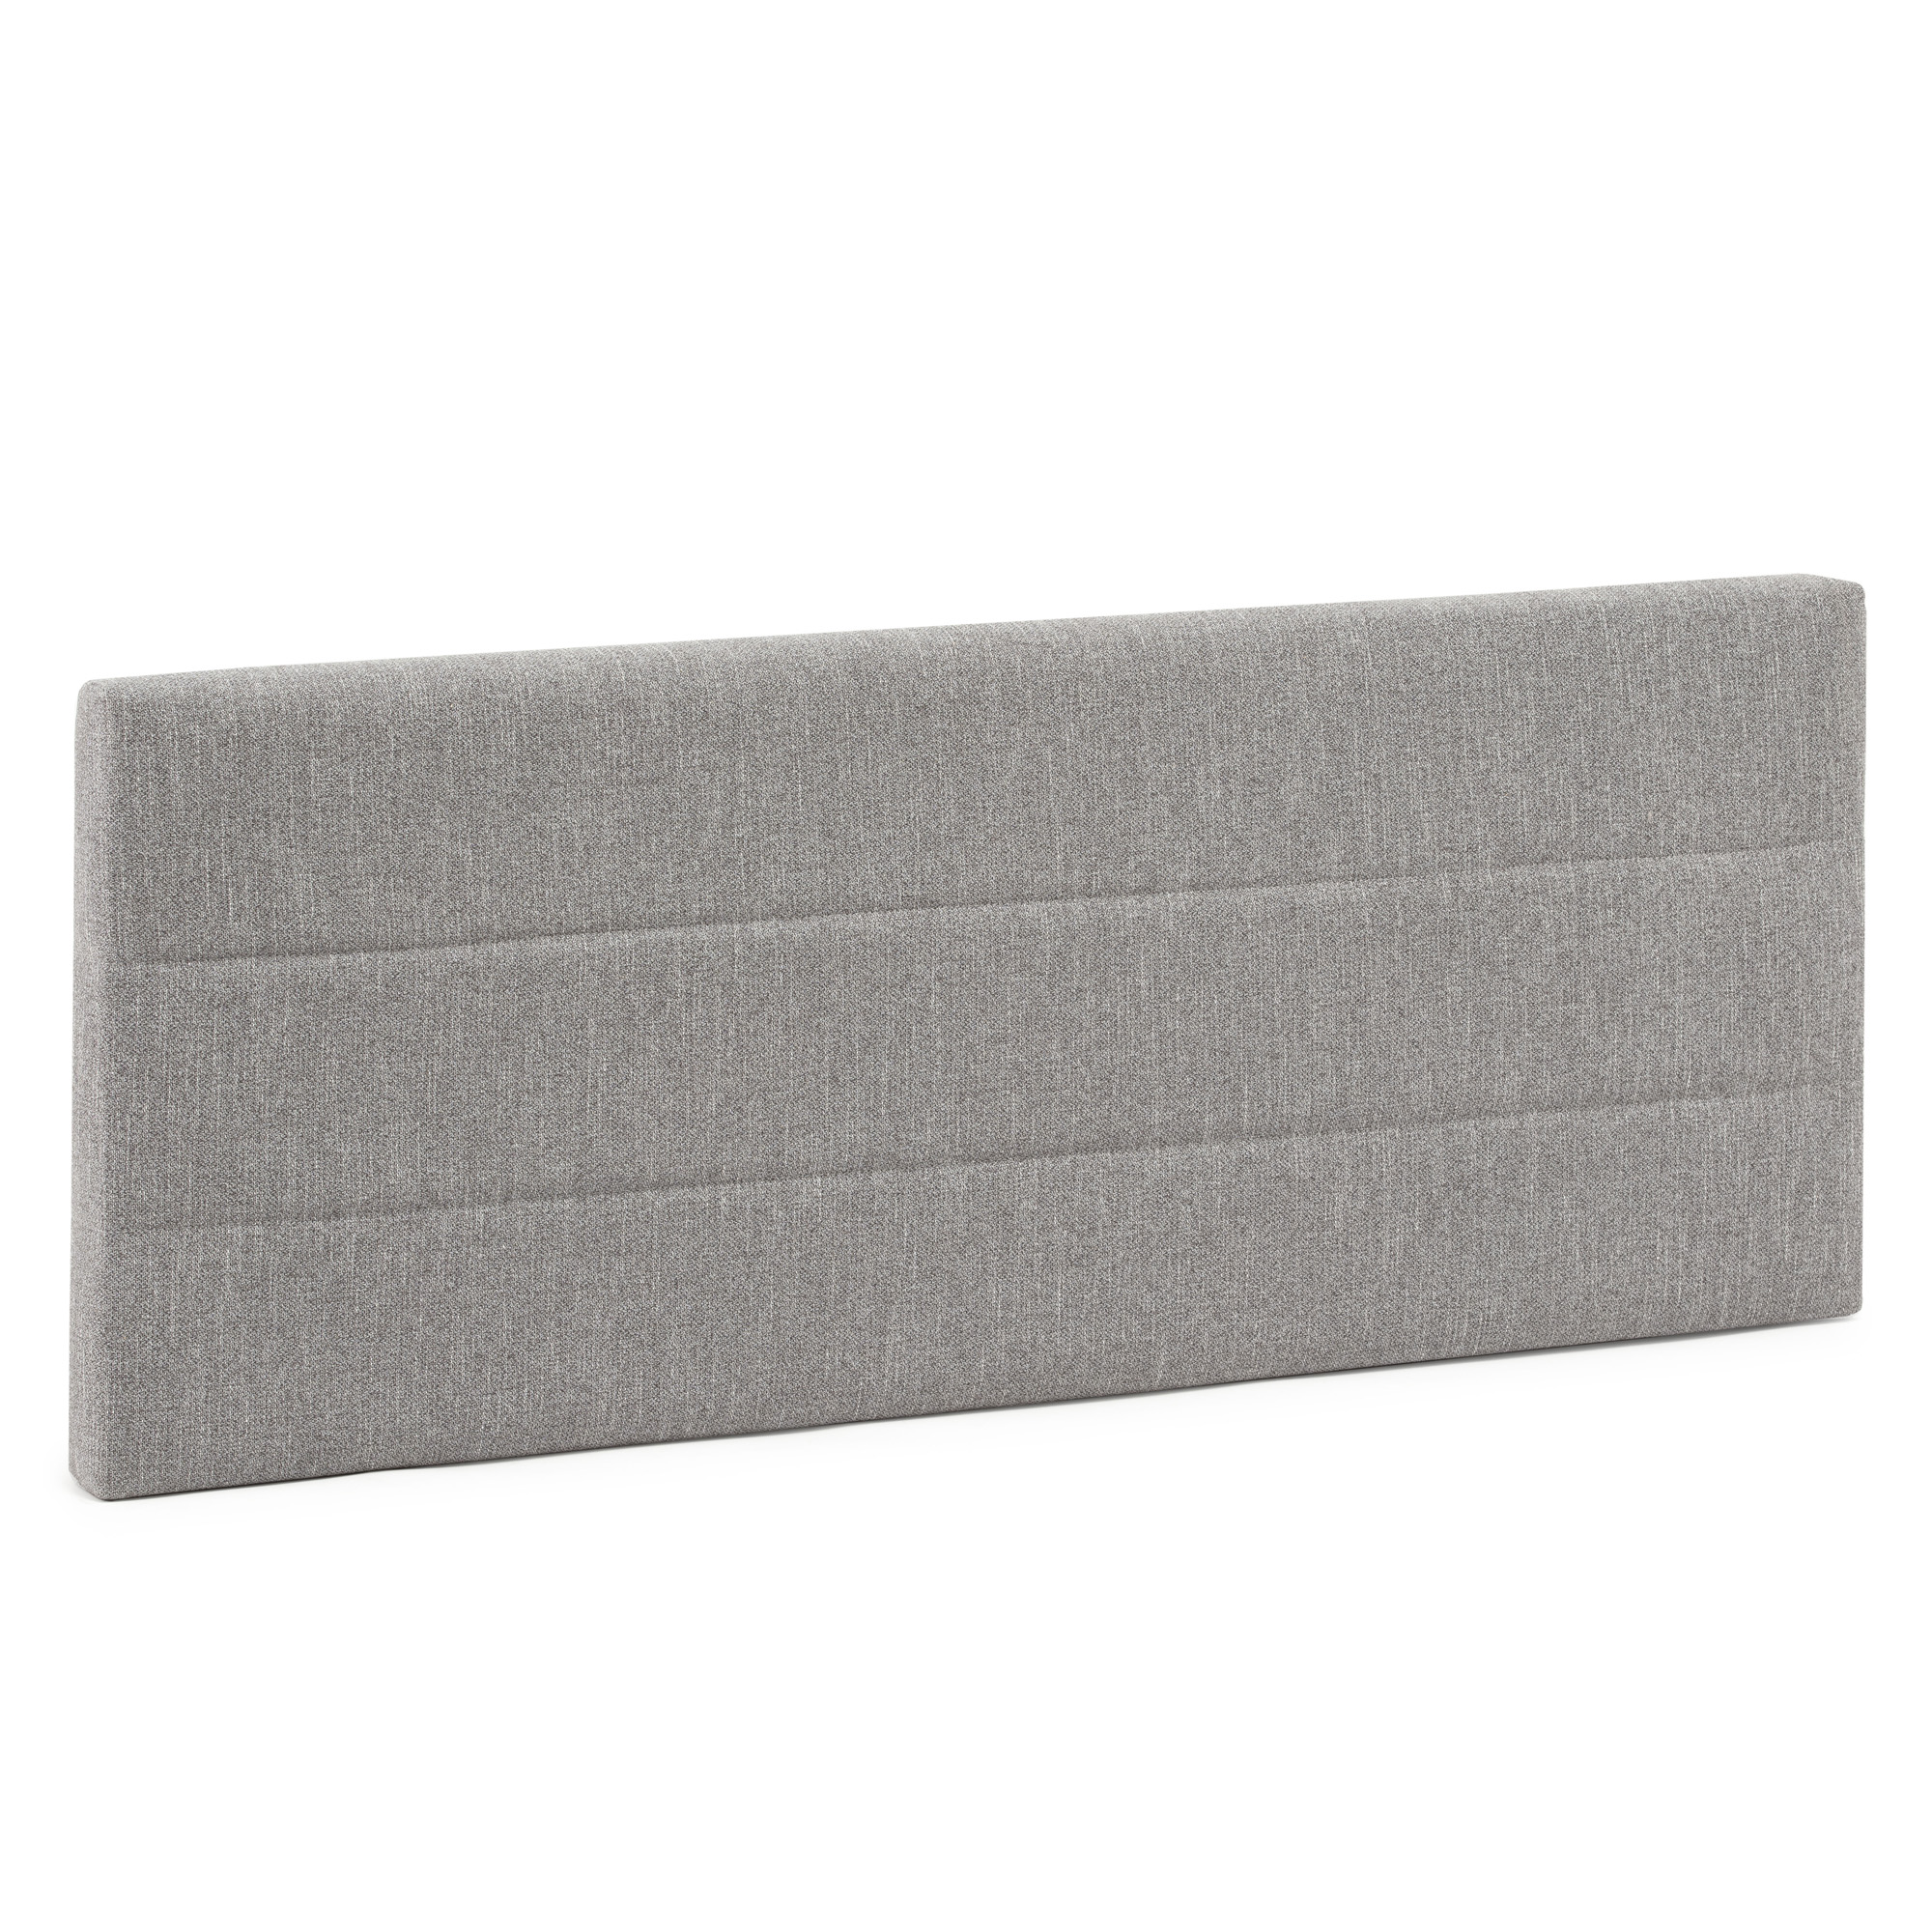 Tête de lit tapissée 160x60 cm couleur gris, 8 cm d'épaisseur